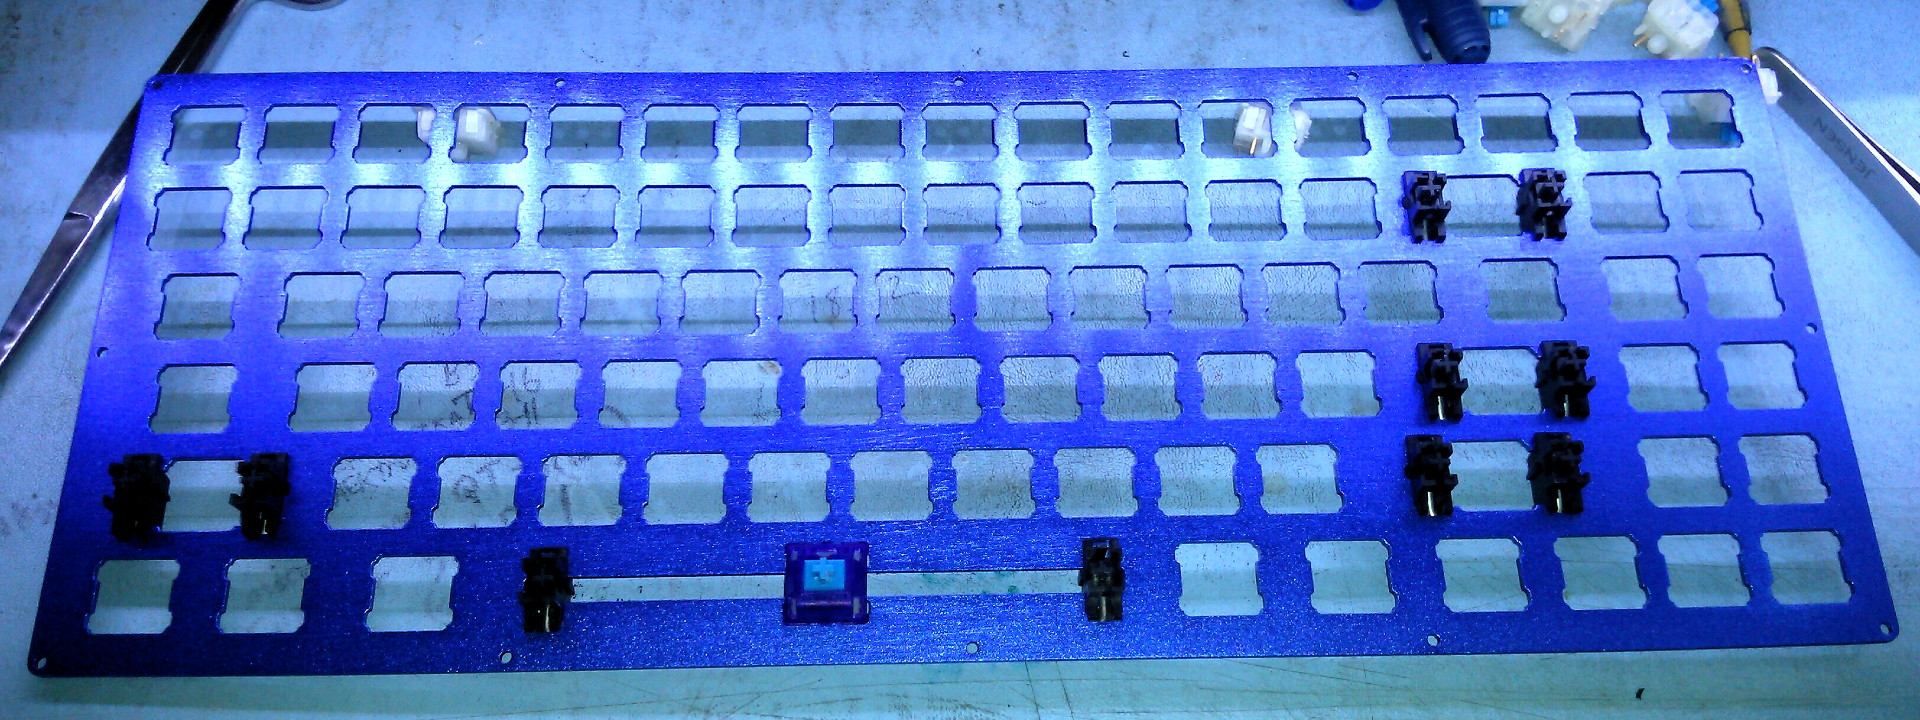 Keyboard75_Stabilizers.jpg